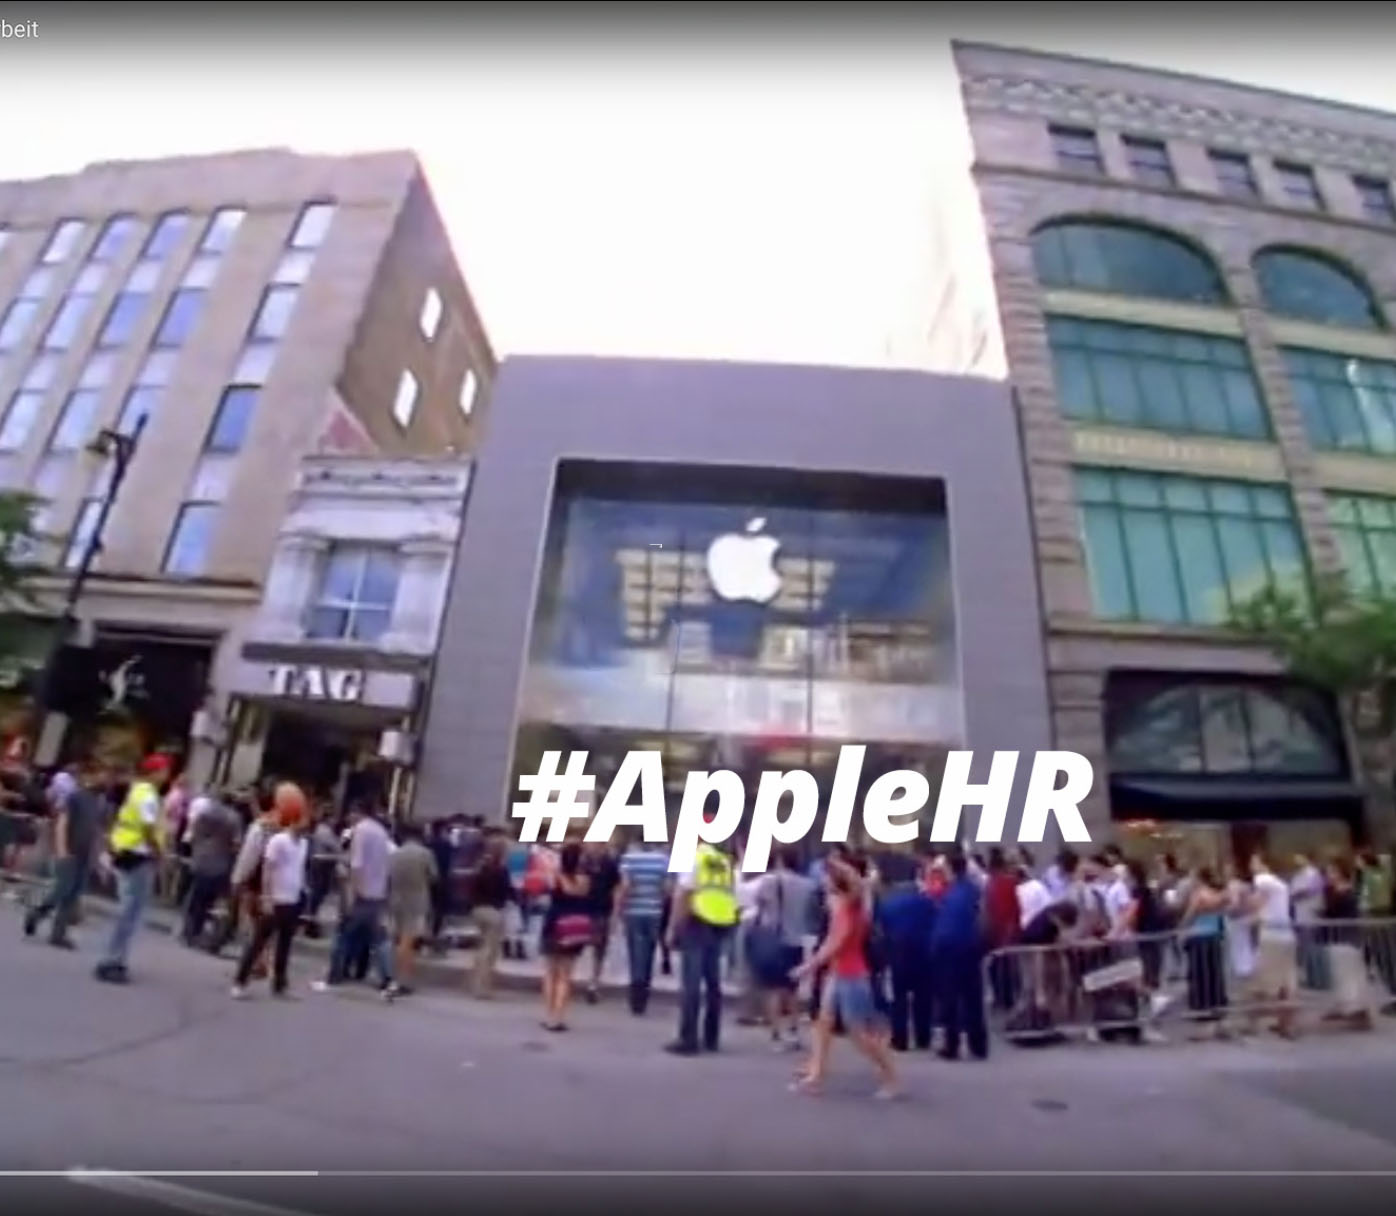 Beispiel Recruiting Video für Jobs im Apple Store von Apple Inc.